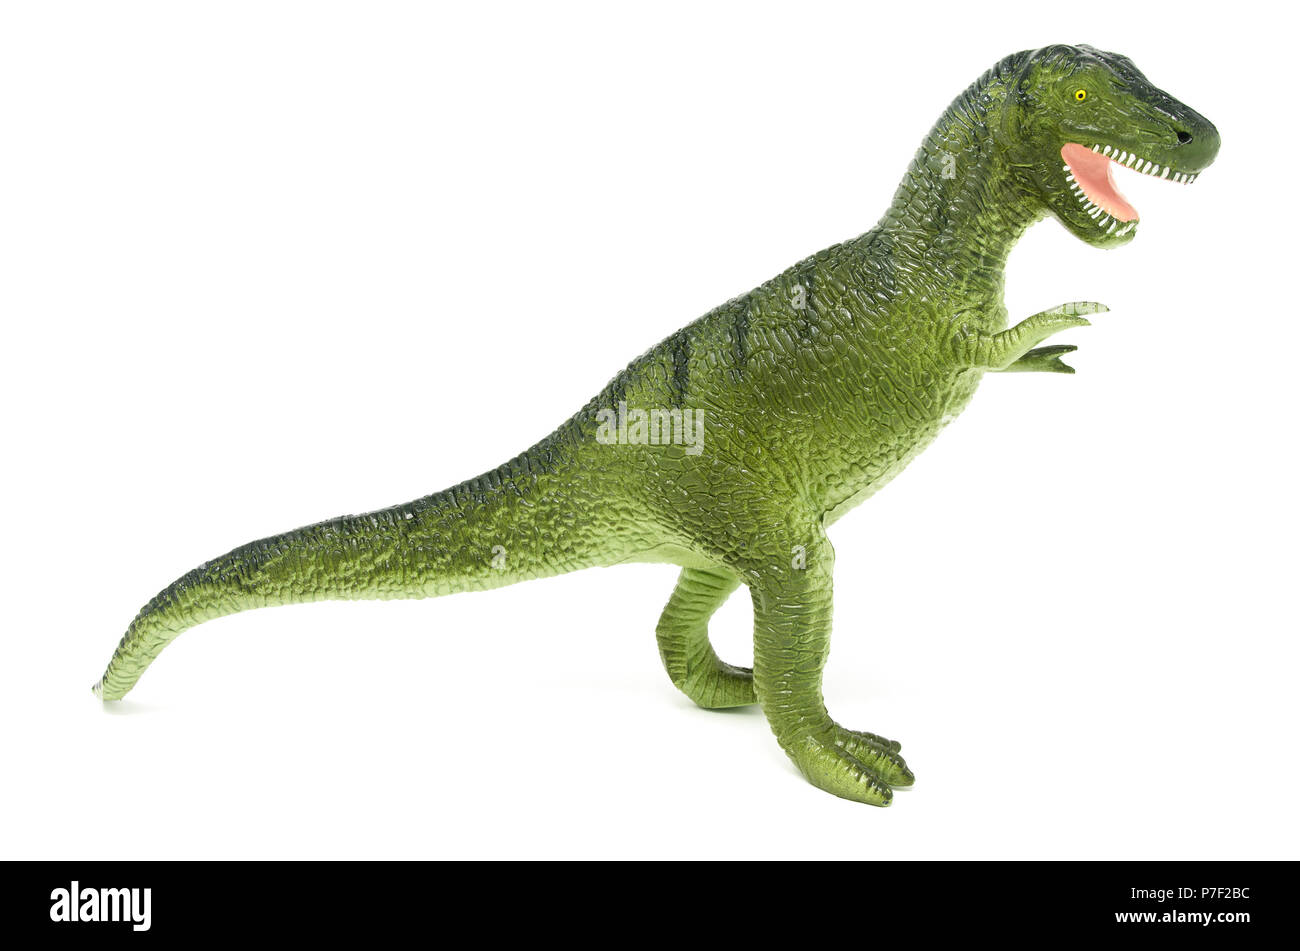 Seite aus Kunststoff grün Tyrannosaurus rex Dinosaurier Spielzeug, auf einem weißen Hintergrund. Stockfoto